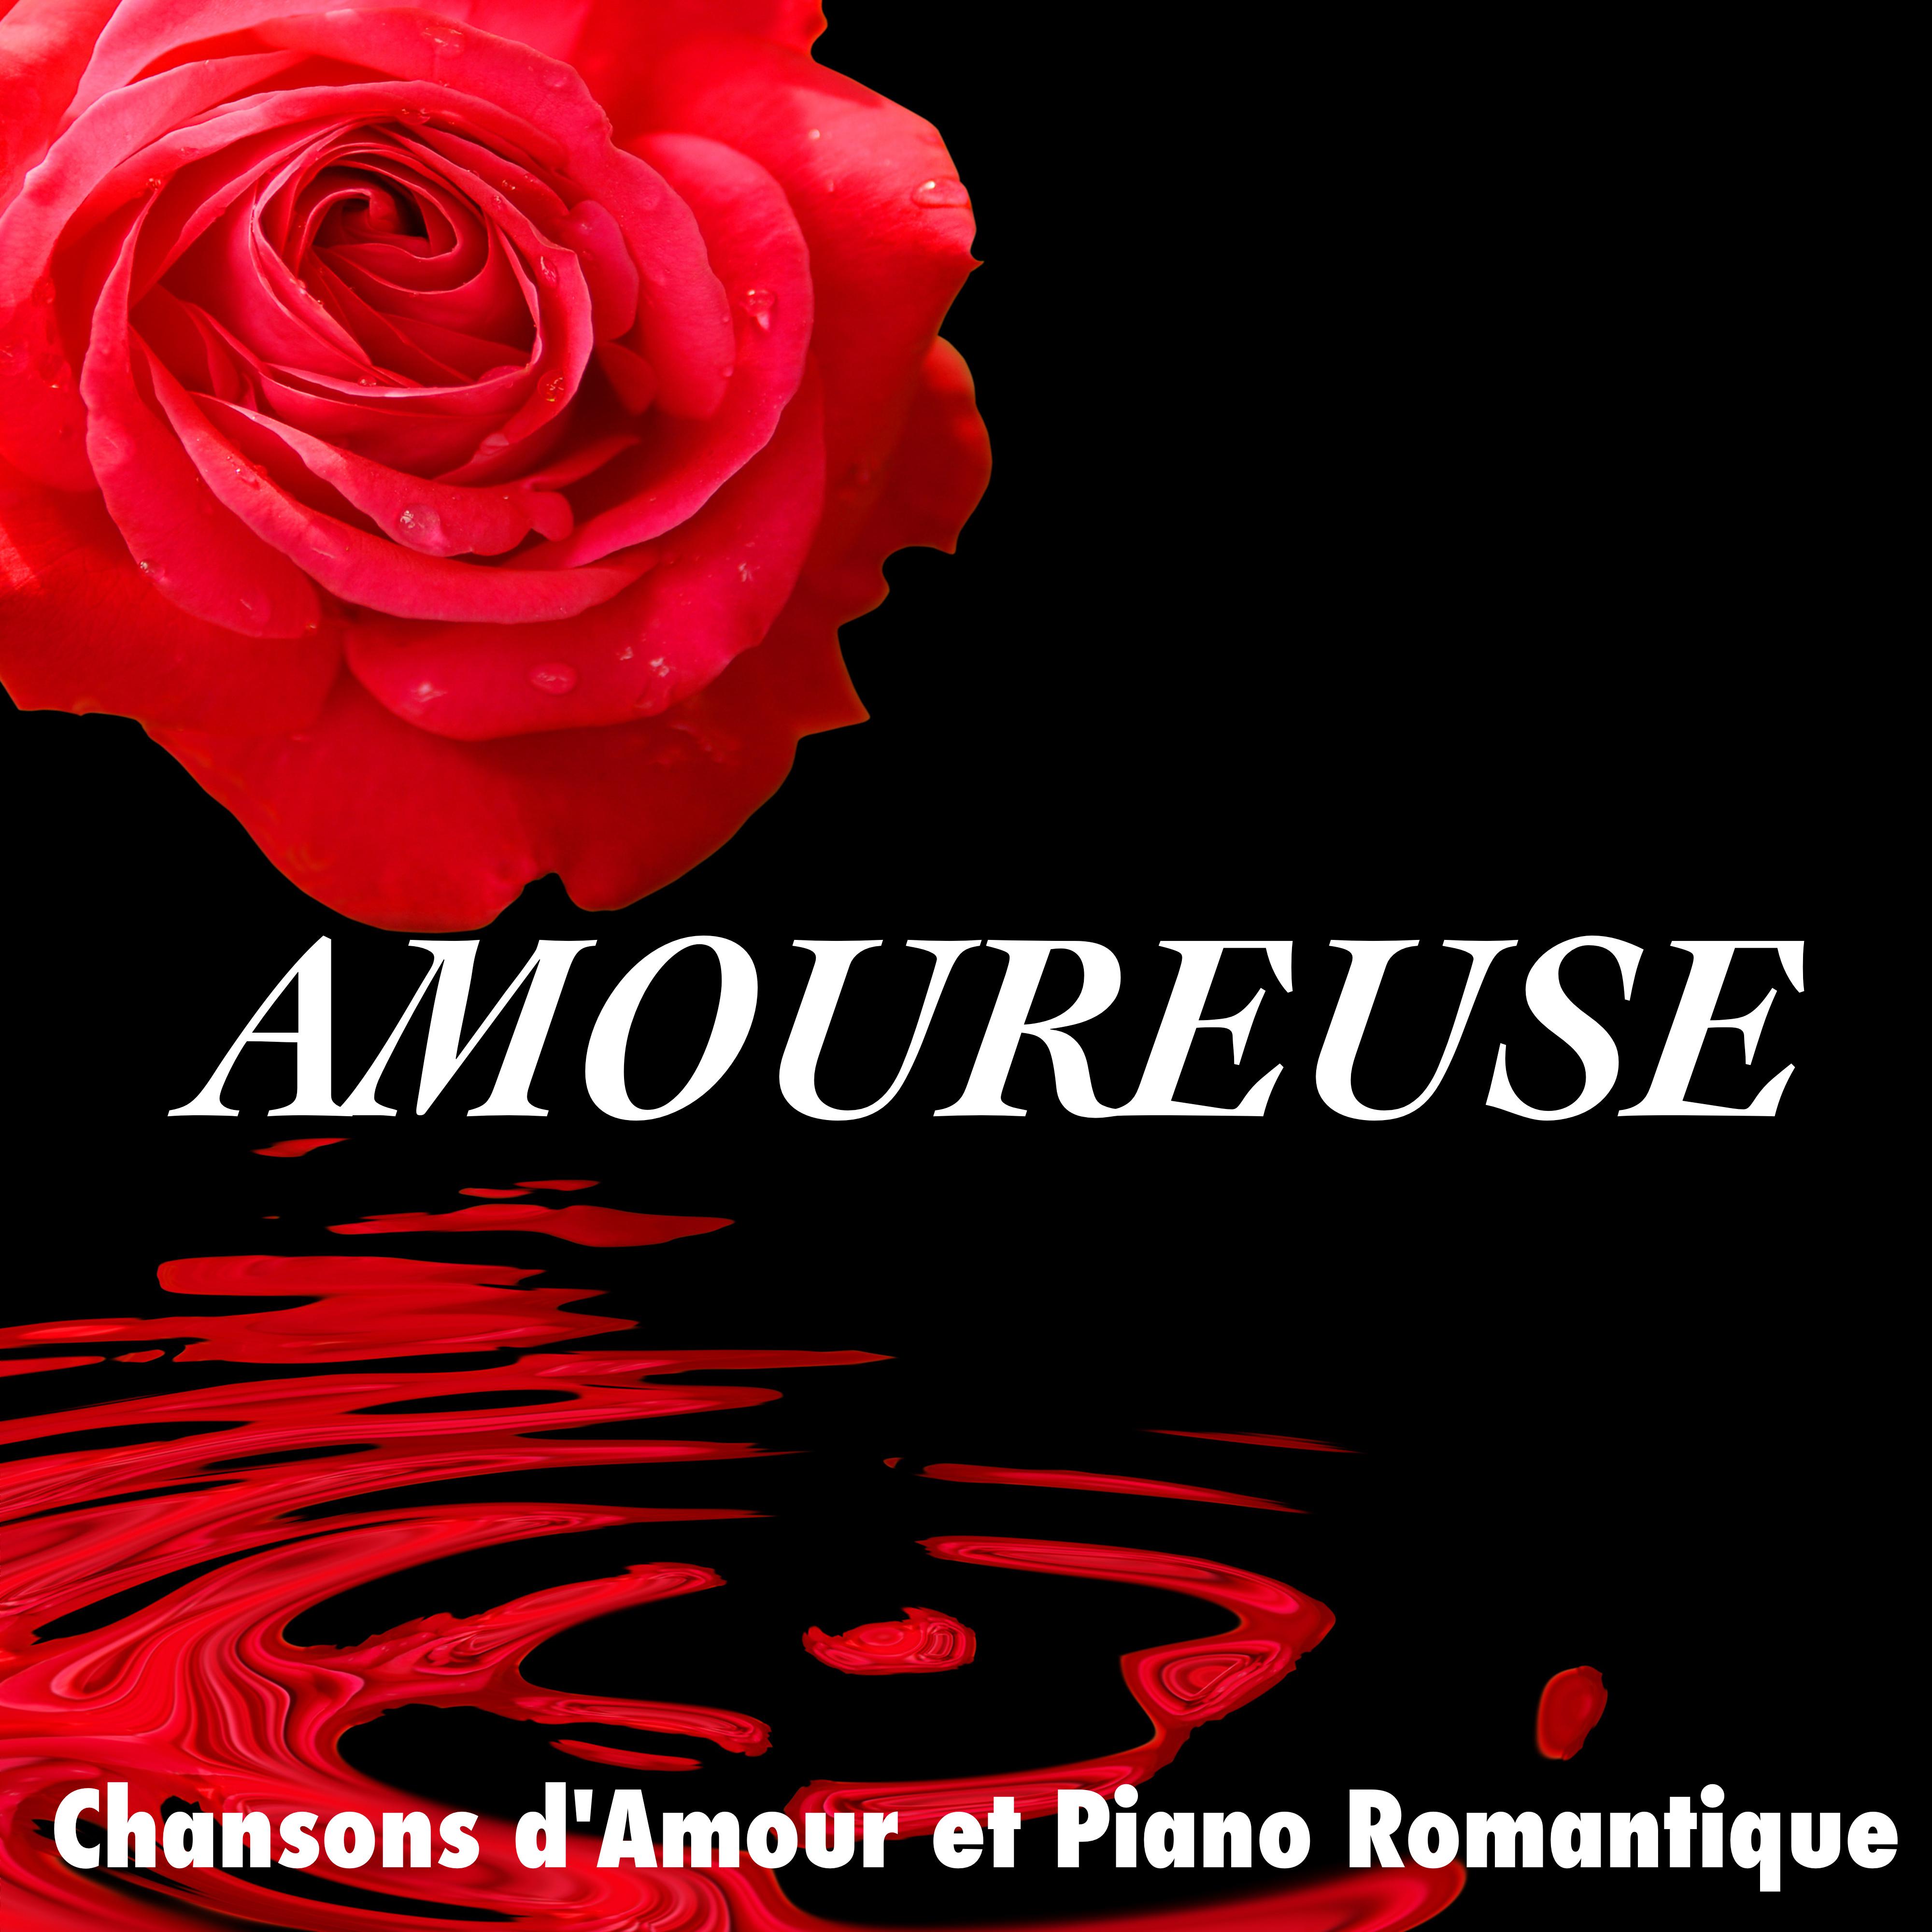 Amoureuse: Chansons d' Amour et Piano Romantique pour Soire e et D ner en Amoureux ou Drague